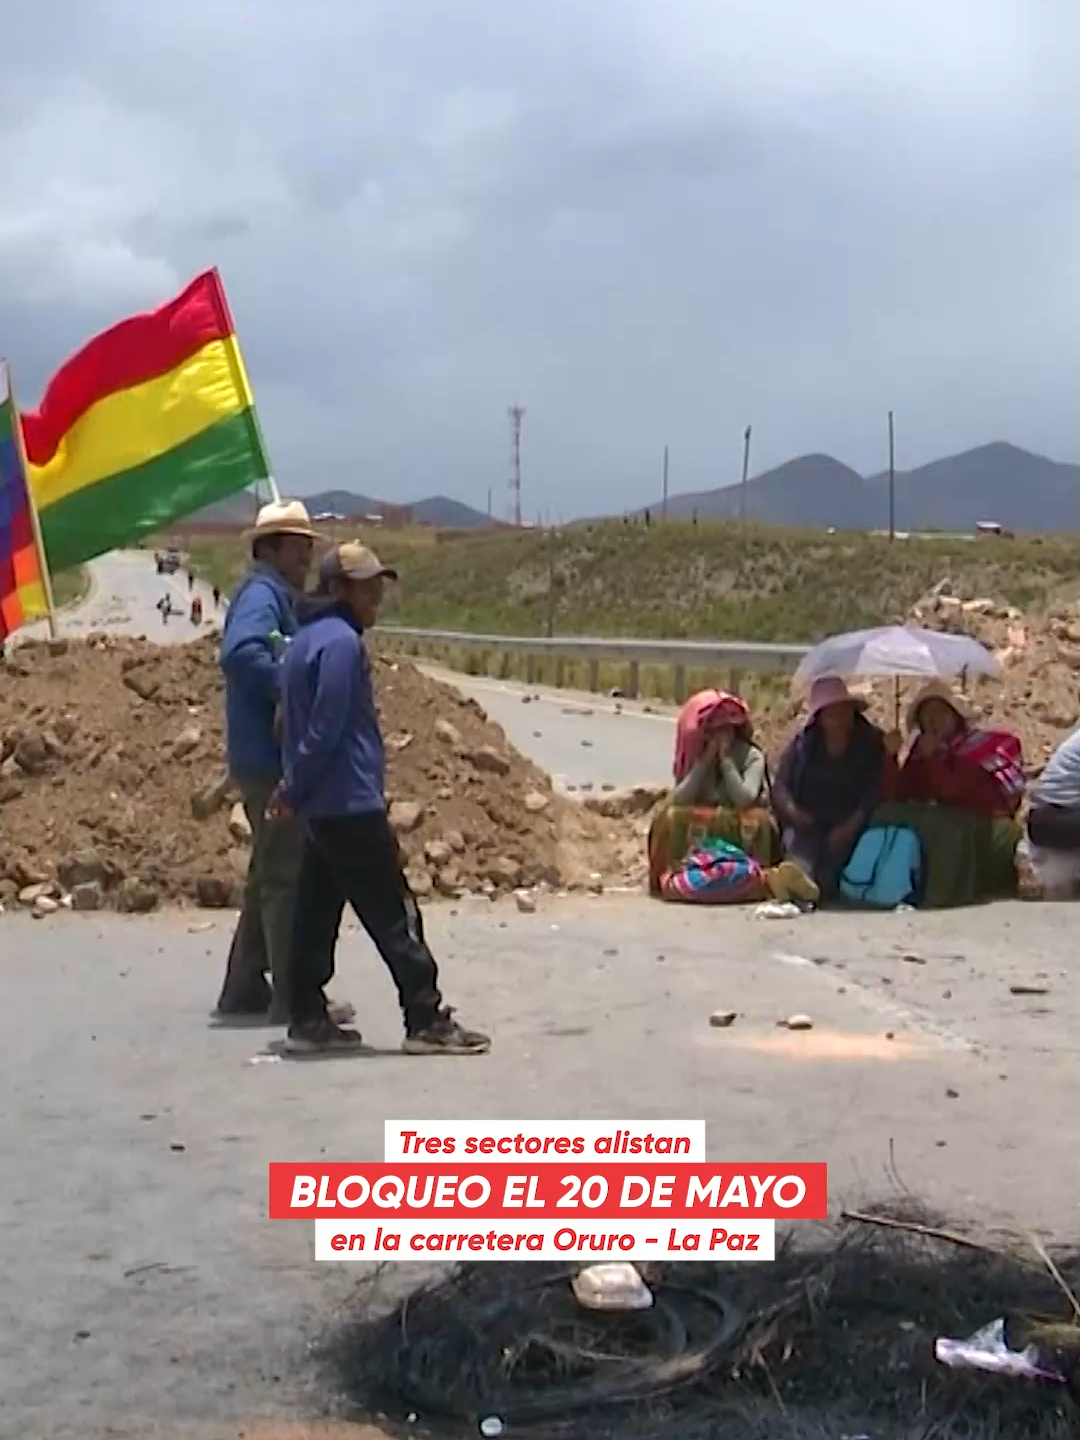 Bloquearán la carretera a Oruro el lunes 20 de mayo. La falta de dólares en el sistema financiero del país movilizará a tres sectores. #Sociedad #LaPaz #Oruro #Carretera #Bloqueo #Unitel